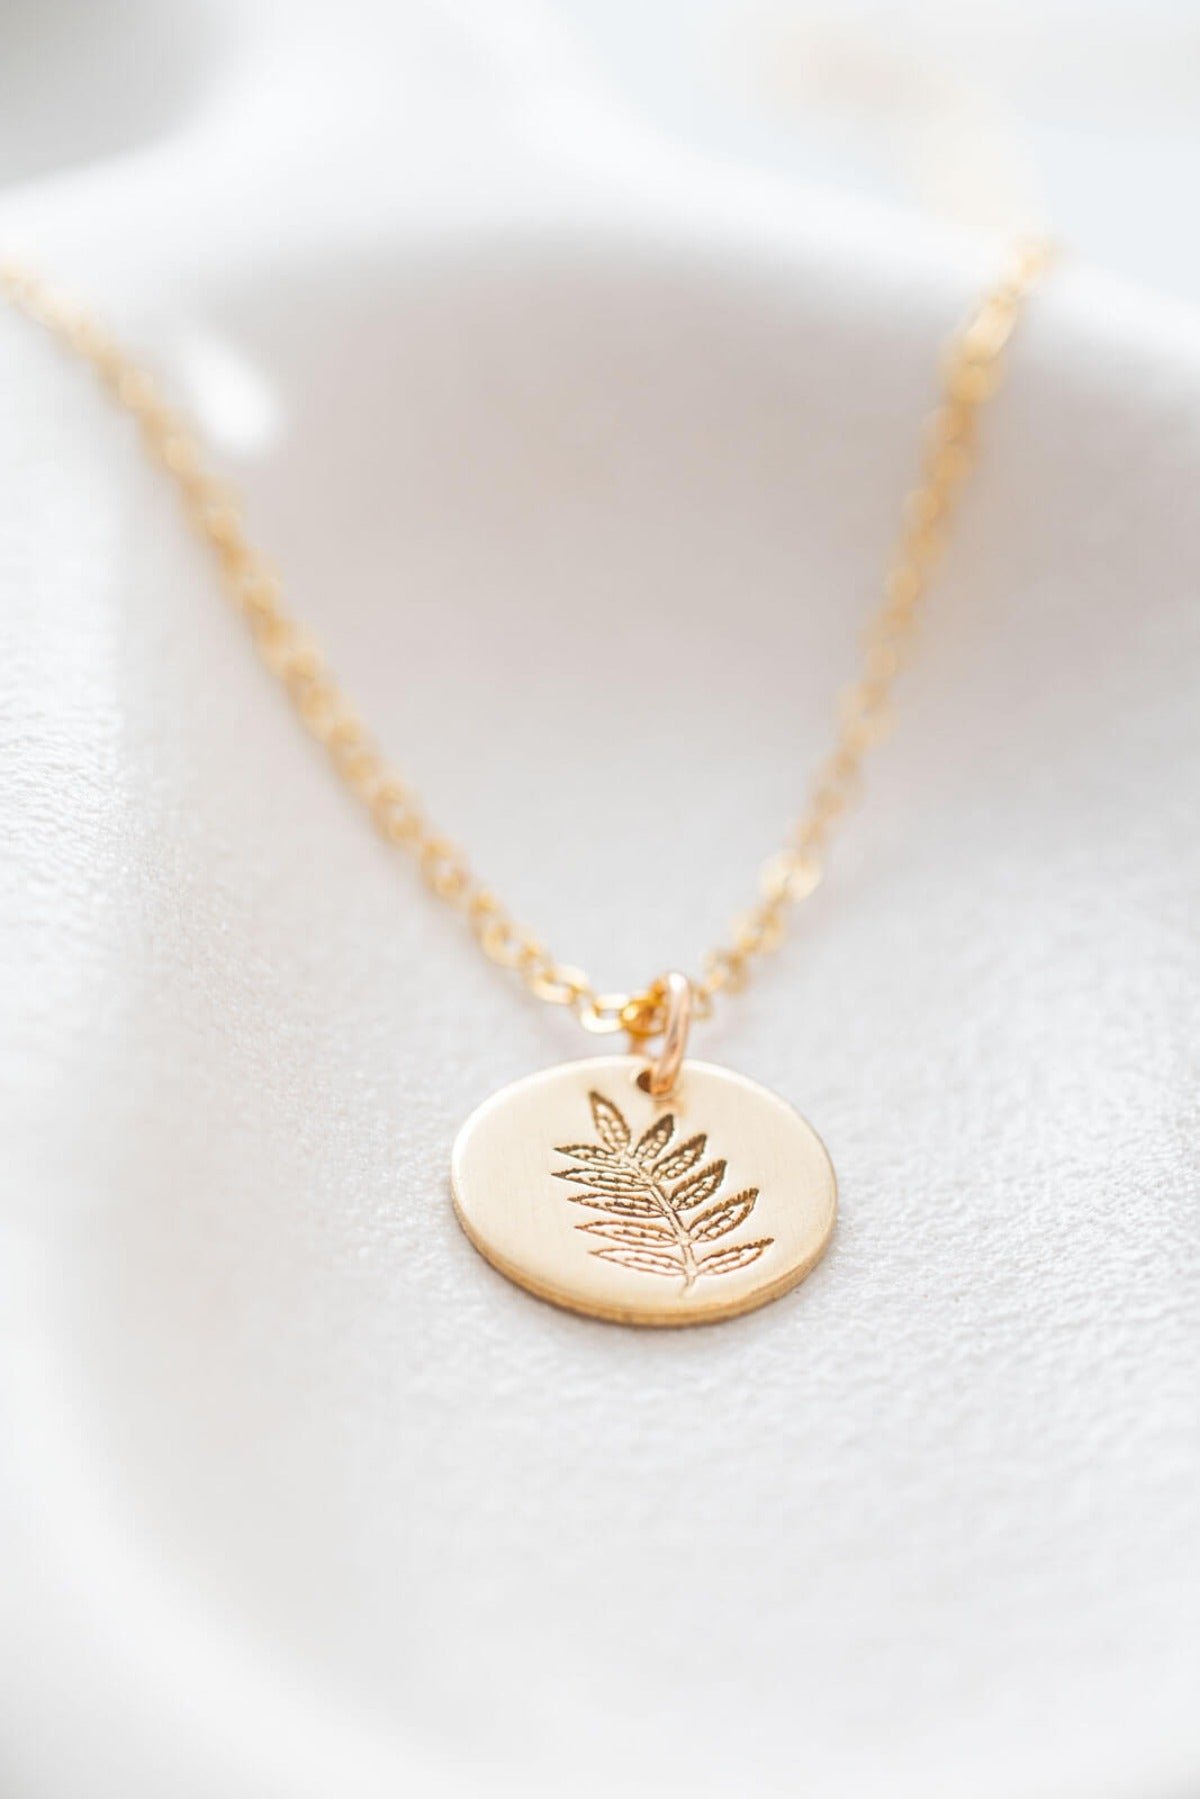 Rowan Tree Birth tree necklace